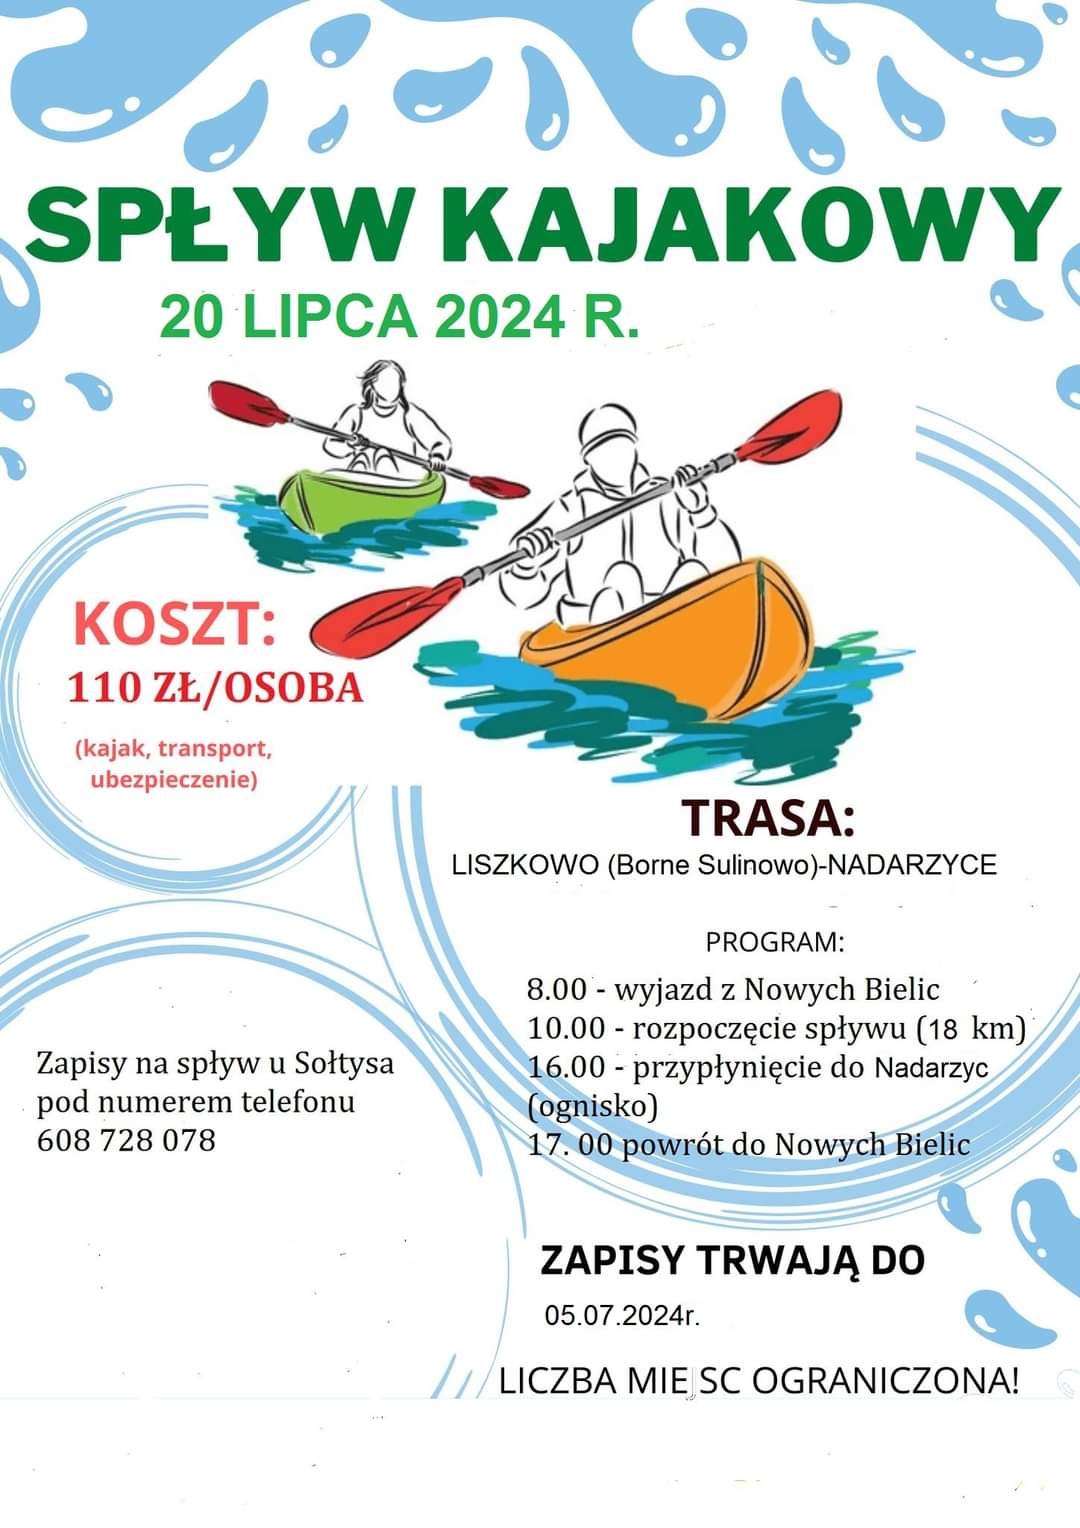 Plakat z zaproszeniem na spływ kajakowy wyjazd z Nowych Bielic do Liszkowa 20 lipca 2024